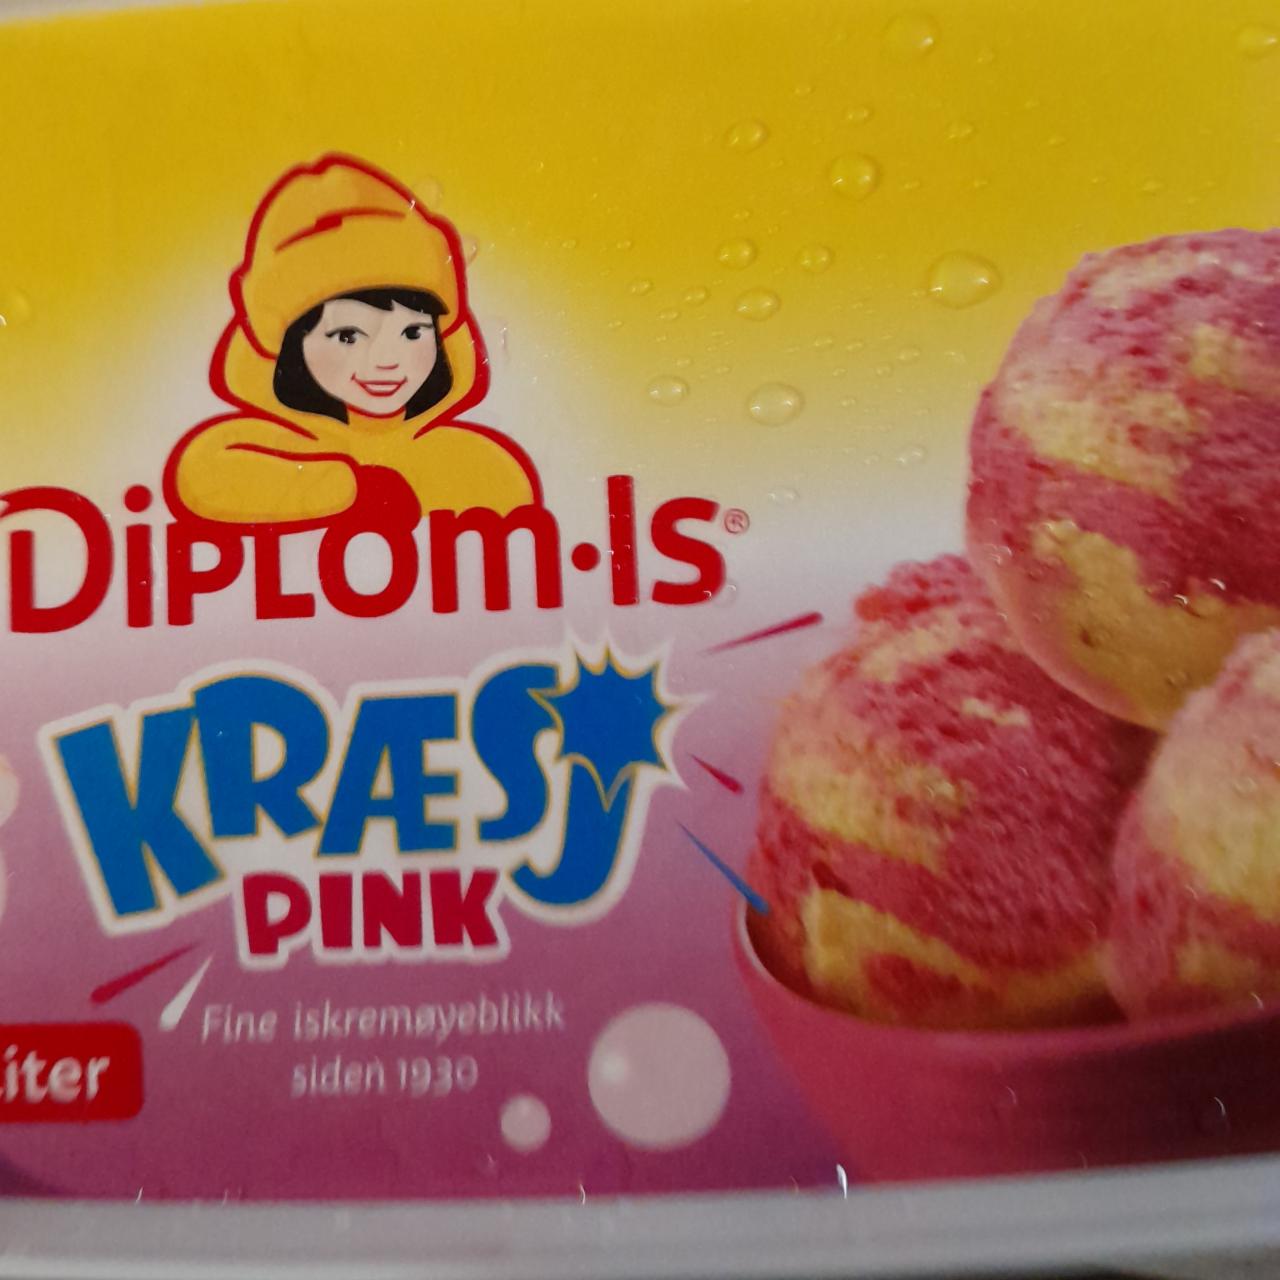 Фото - Kræsj pink Diplom-is